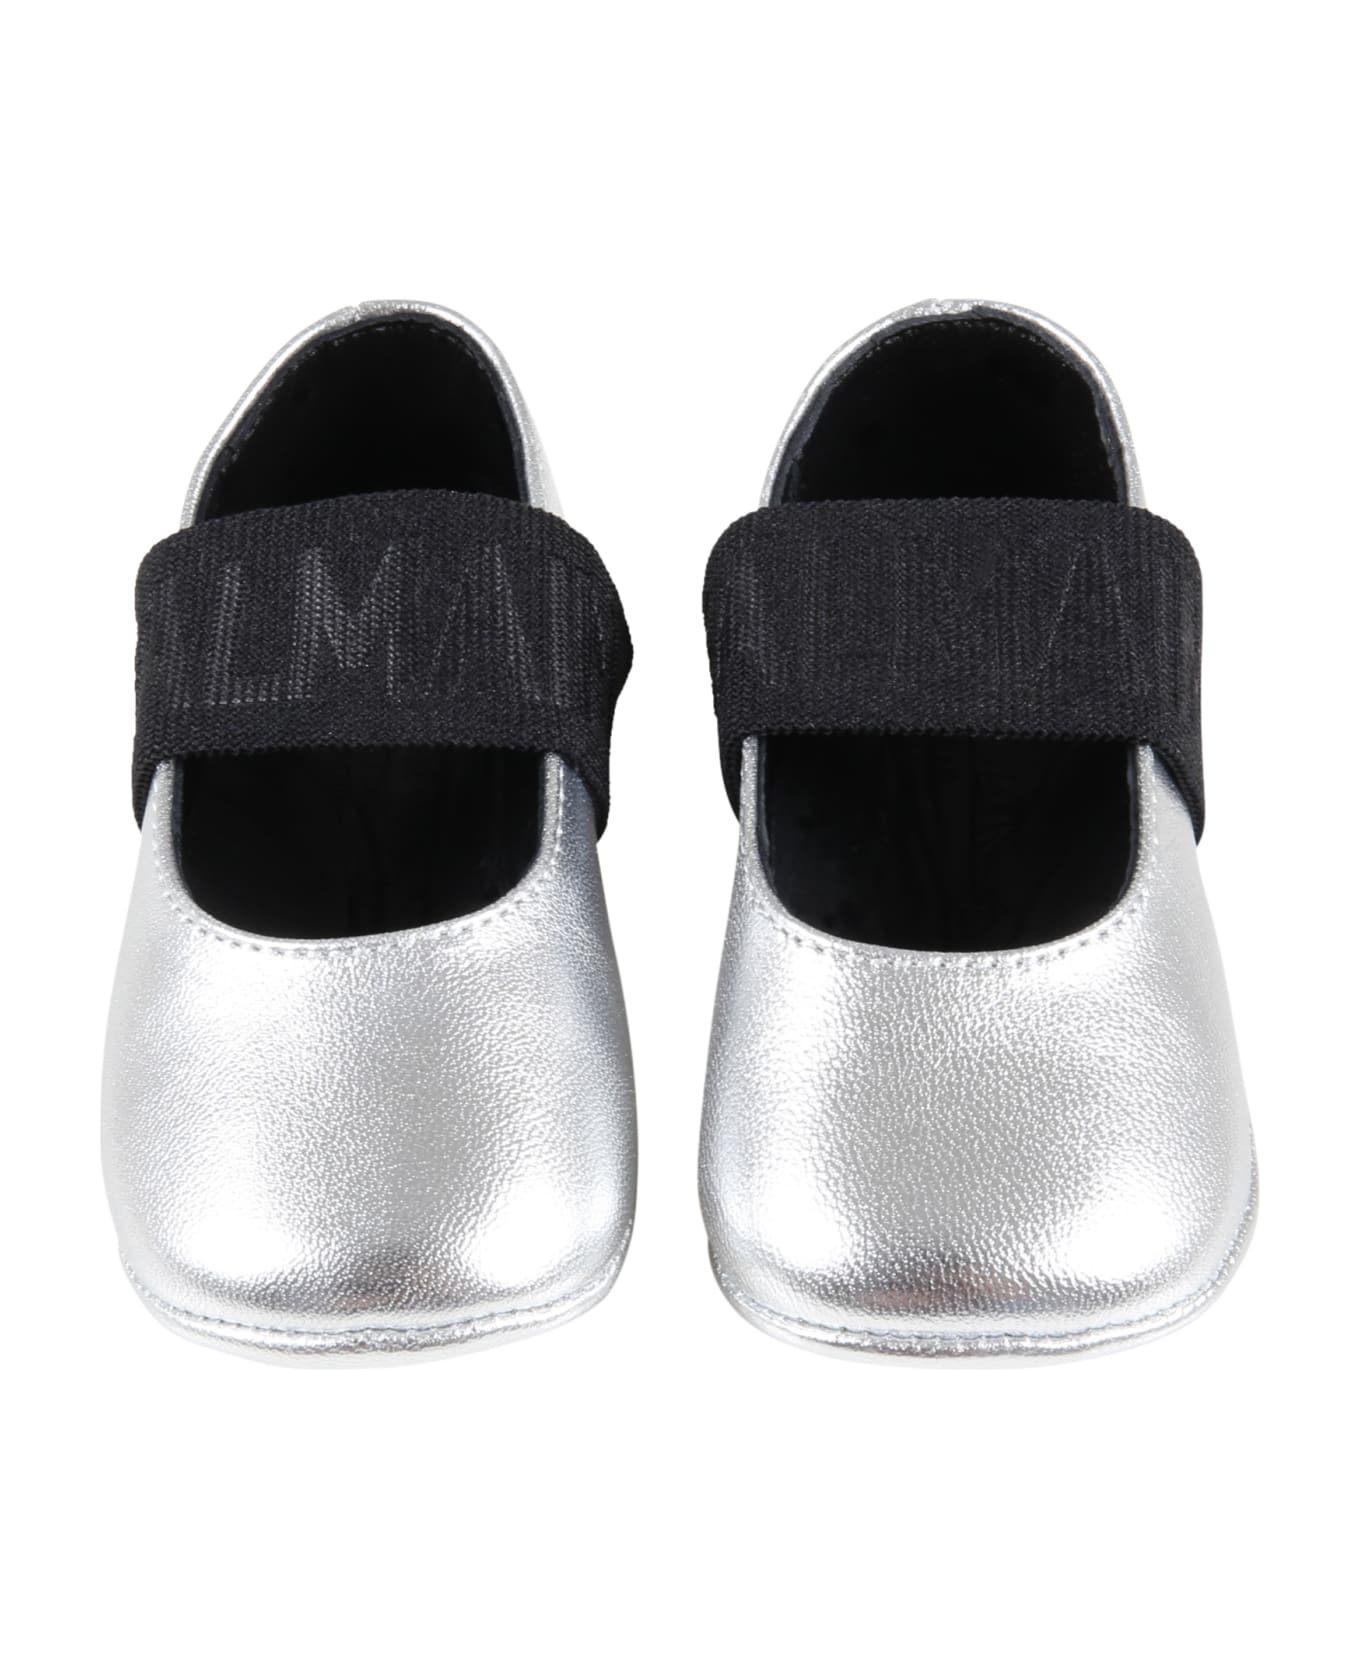 Balmain Silver Ballet Flats For Baby Girl With Logo - Silver